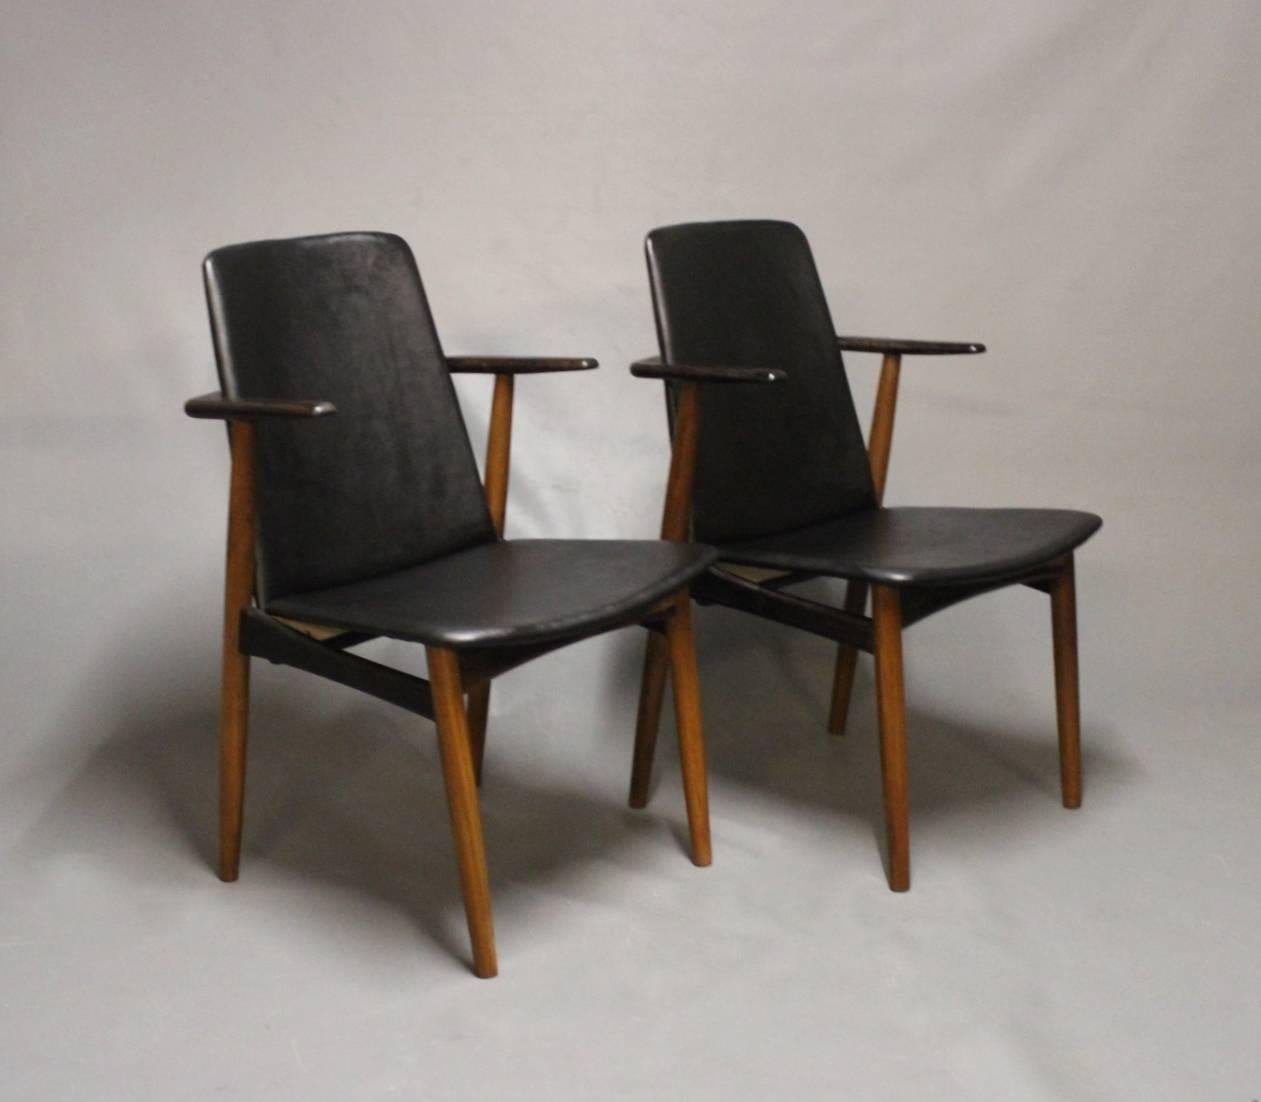 Ein Paar Sessel in klassischem schwarzem Leder und Palisanderholz, entworfen von Hans Olsen in den 1960er Jahren. Die Stühle sind in hervorragendem Vintage-Zustand.